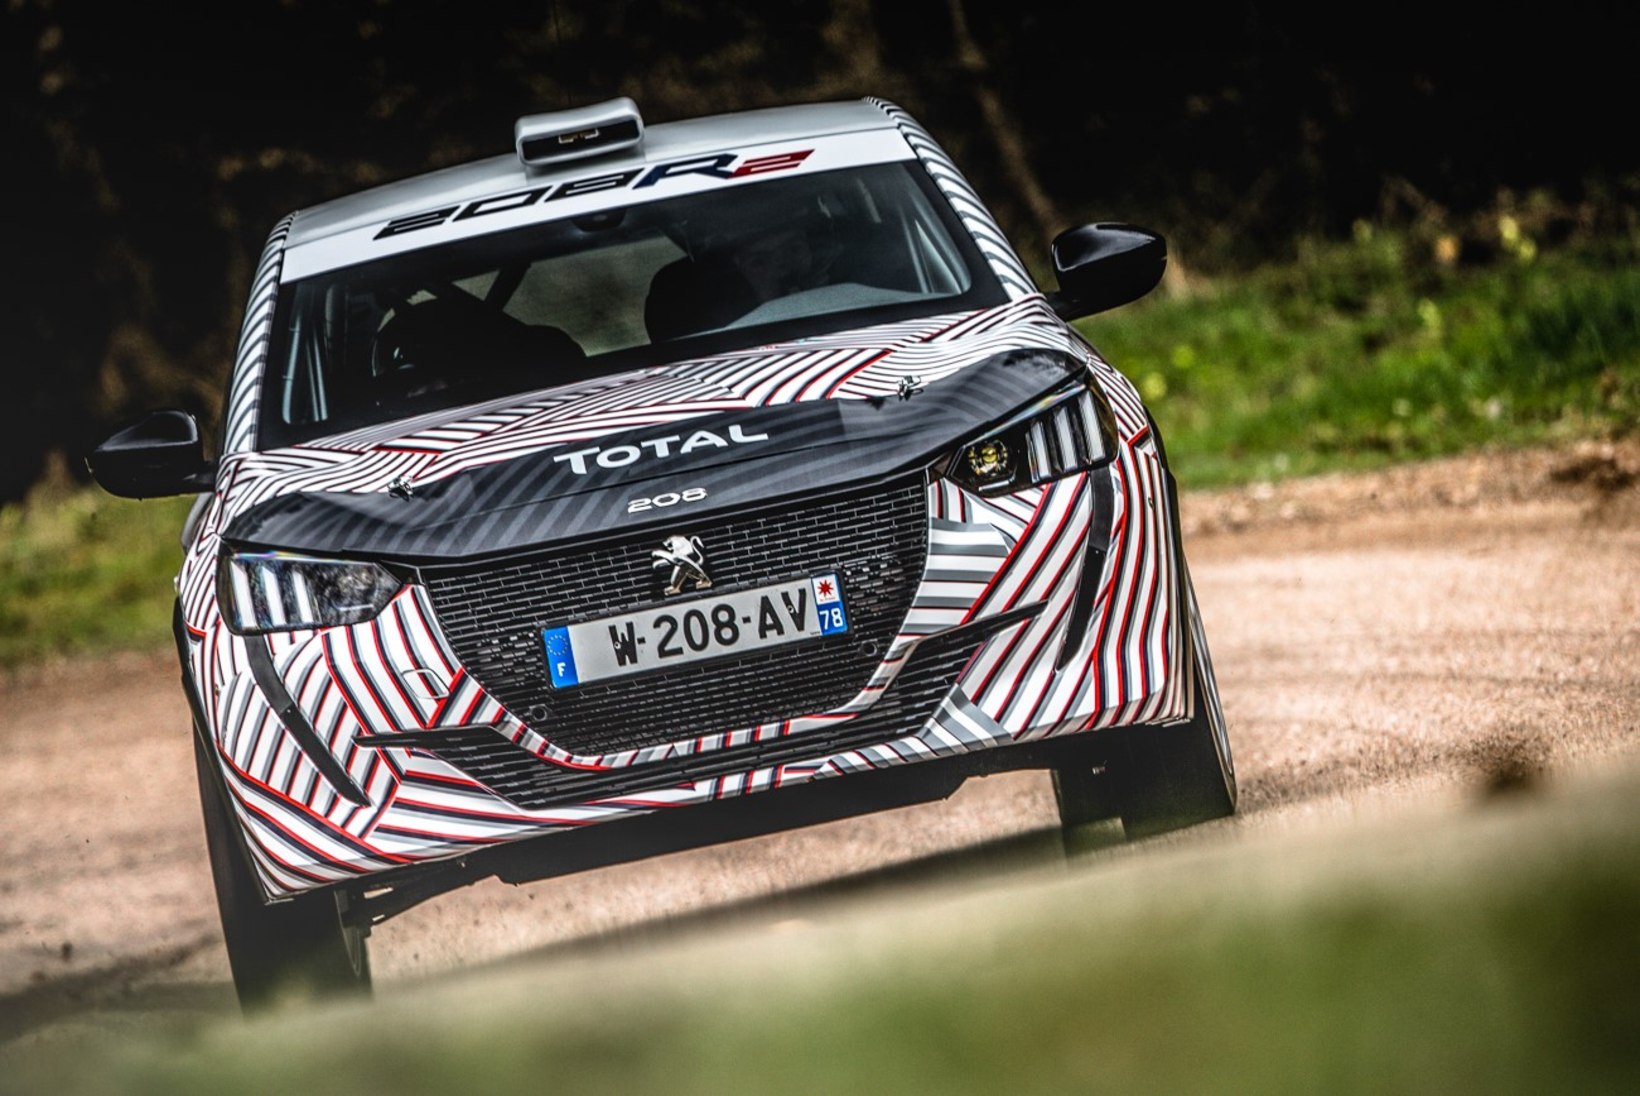 FOTOD | Peugeot lasi uhiuue rallimasina esmakordselt asfaldile